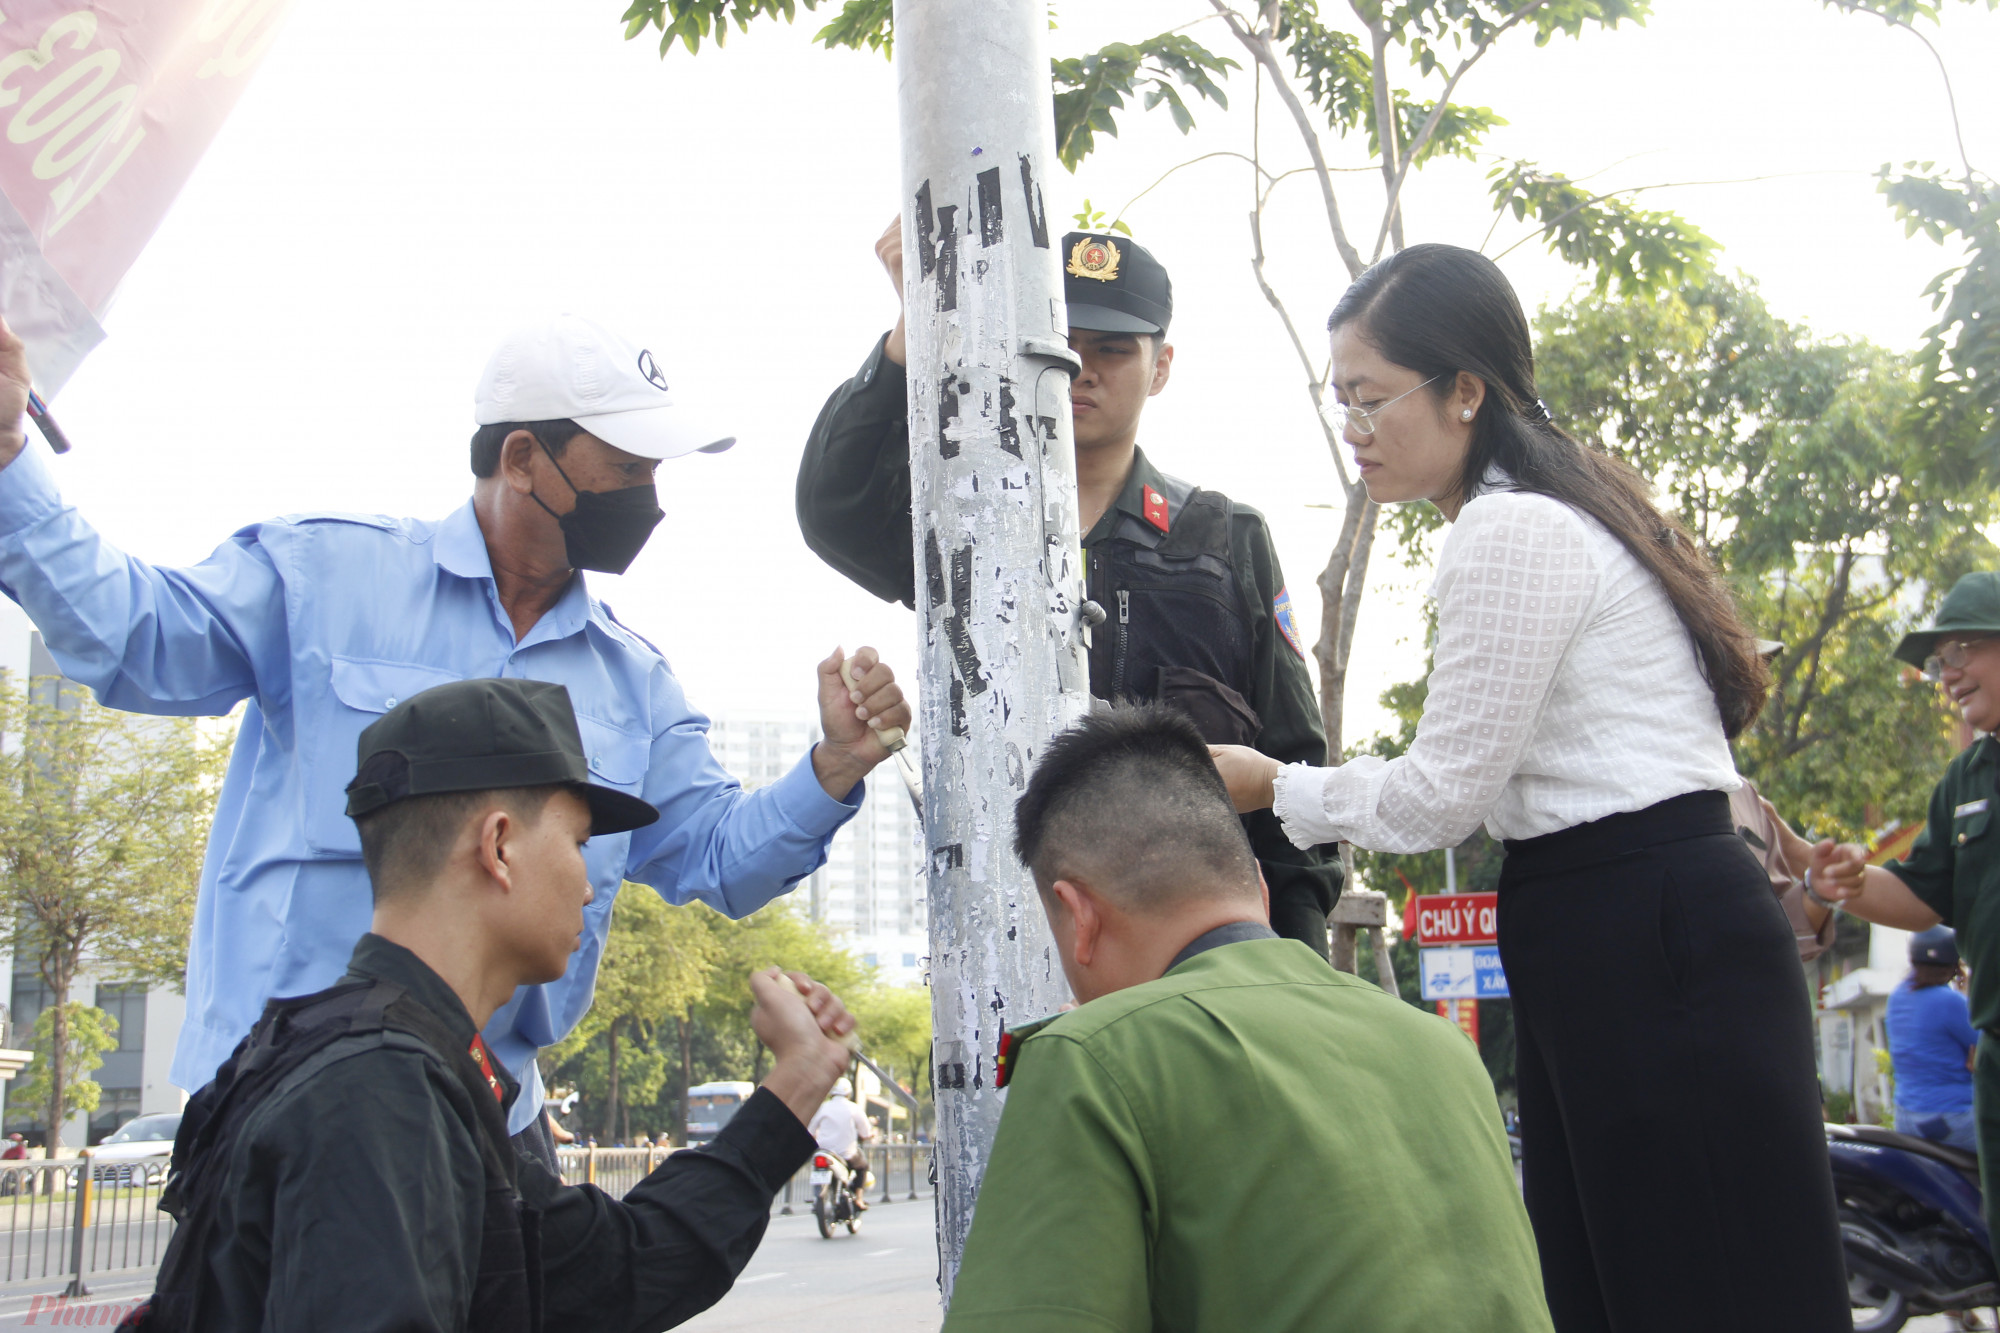 Sáng nay, có khoảng 300 người ở quận Bình Tân ra quân xử lý quảng cáo tín dụng đen, vẽ bậy.